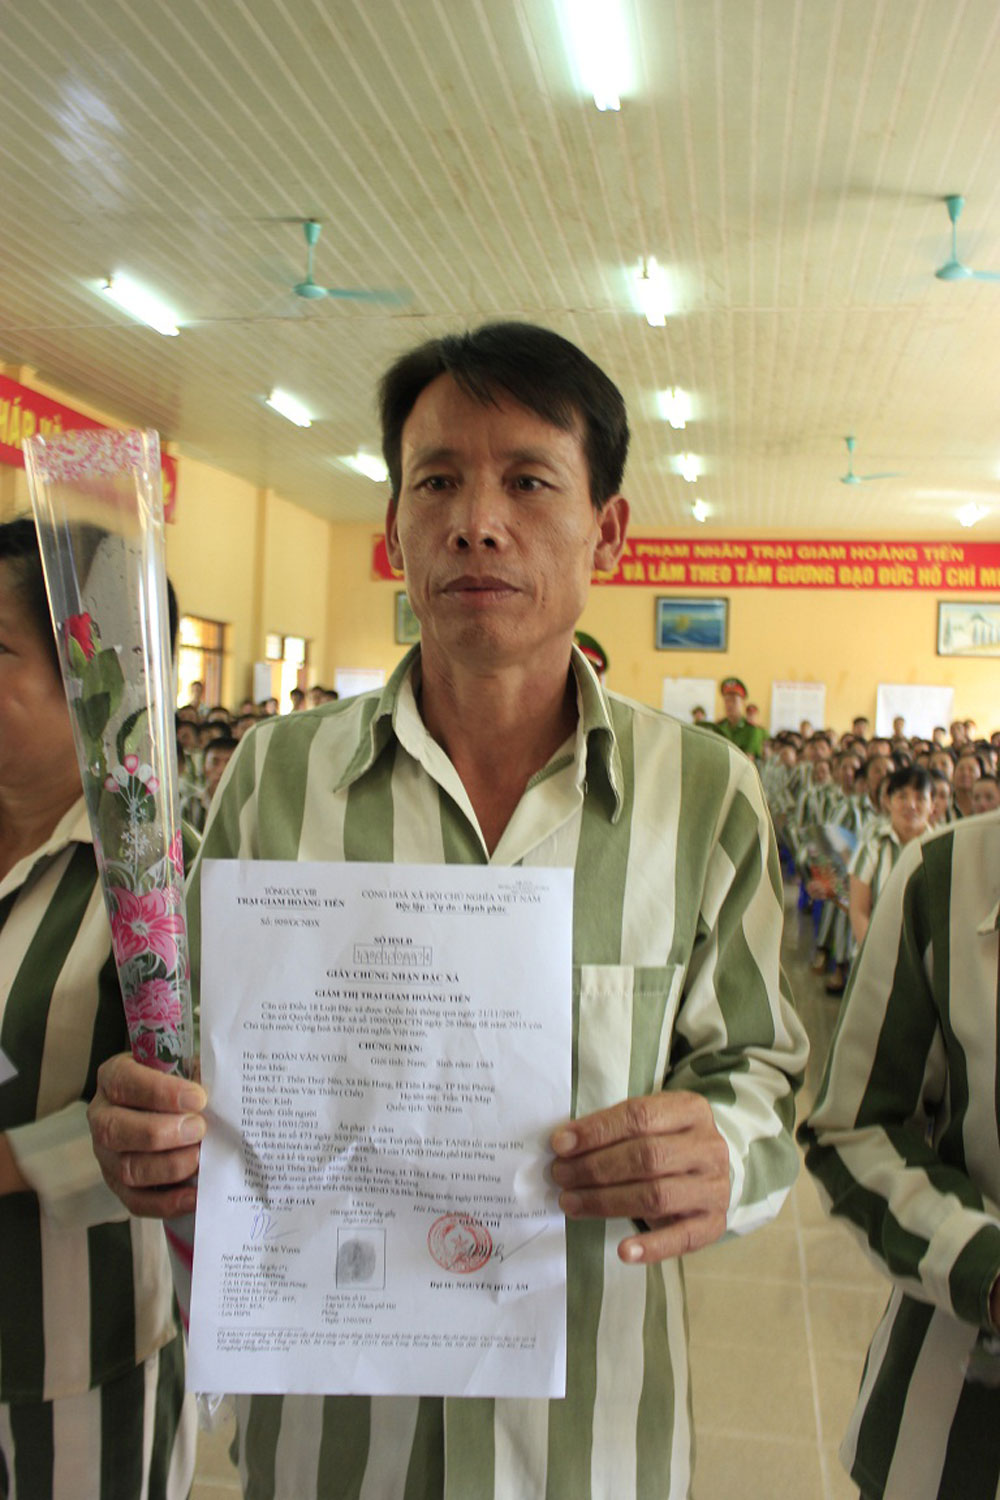 Anh em ông Đoàn Văn Vươn đã được ra tù 2